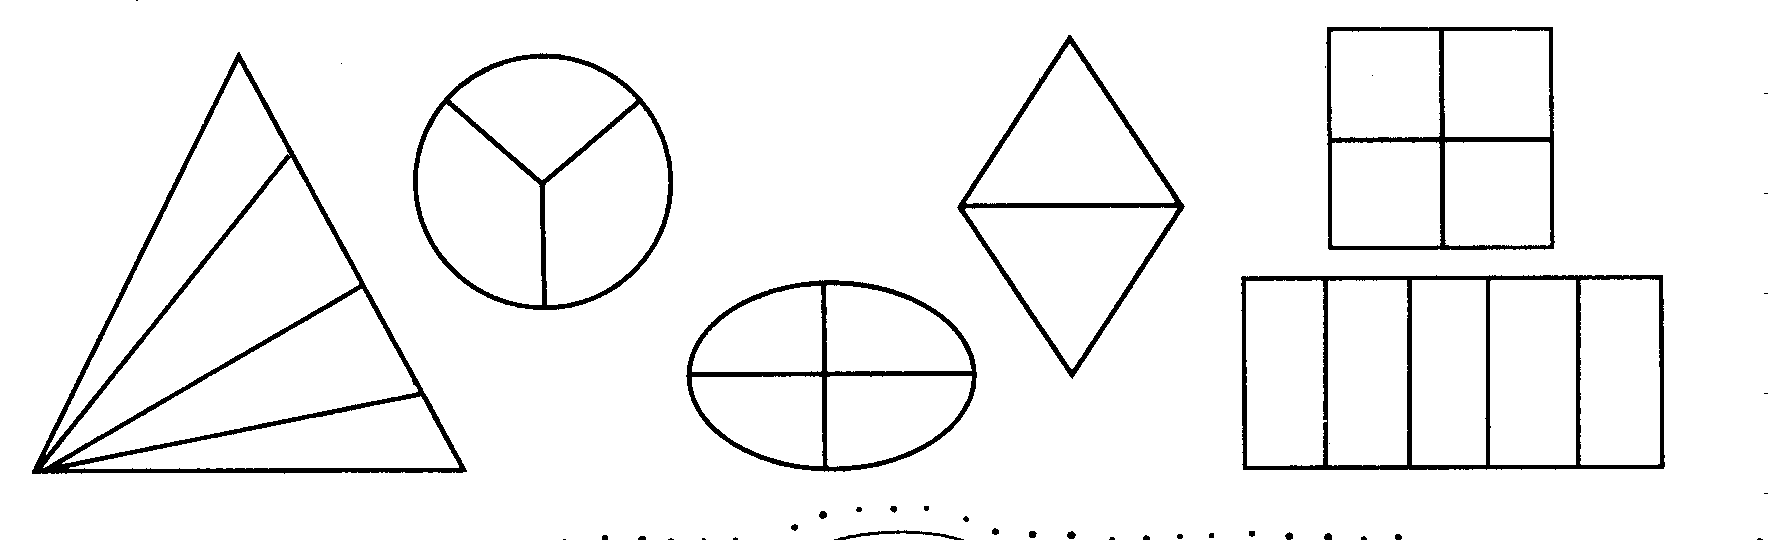 Фигуры деления. Обведи номера фигур которые поделены на доли. Фигуры которые. Фигура 4 части. Раскрась только те фигуры которые разделены на шесть частей.